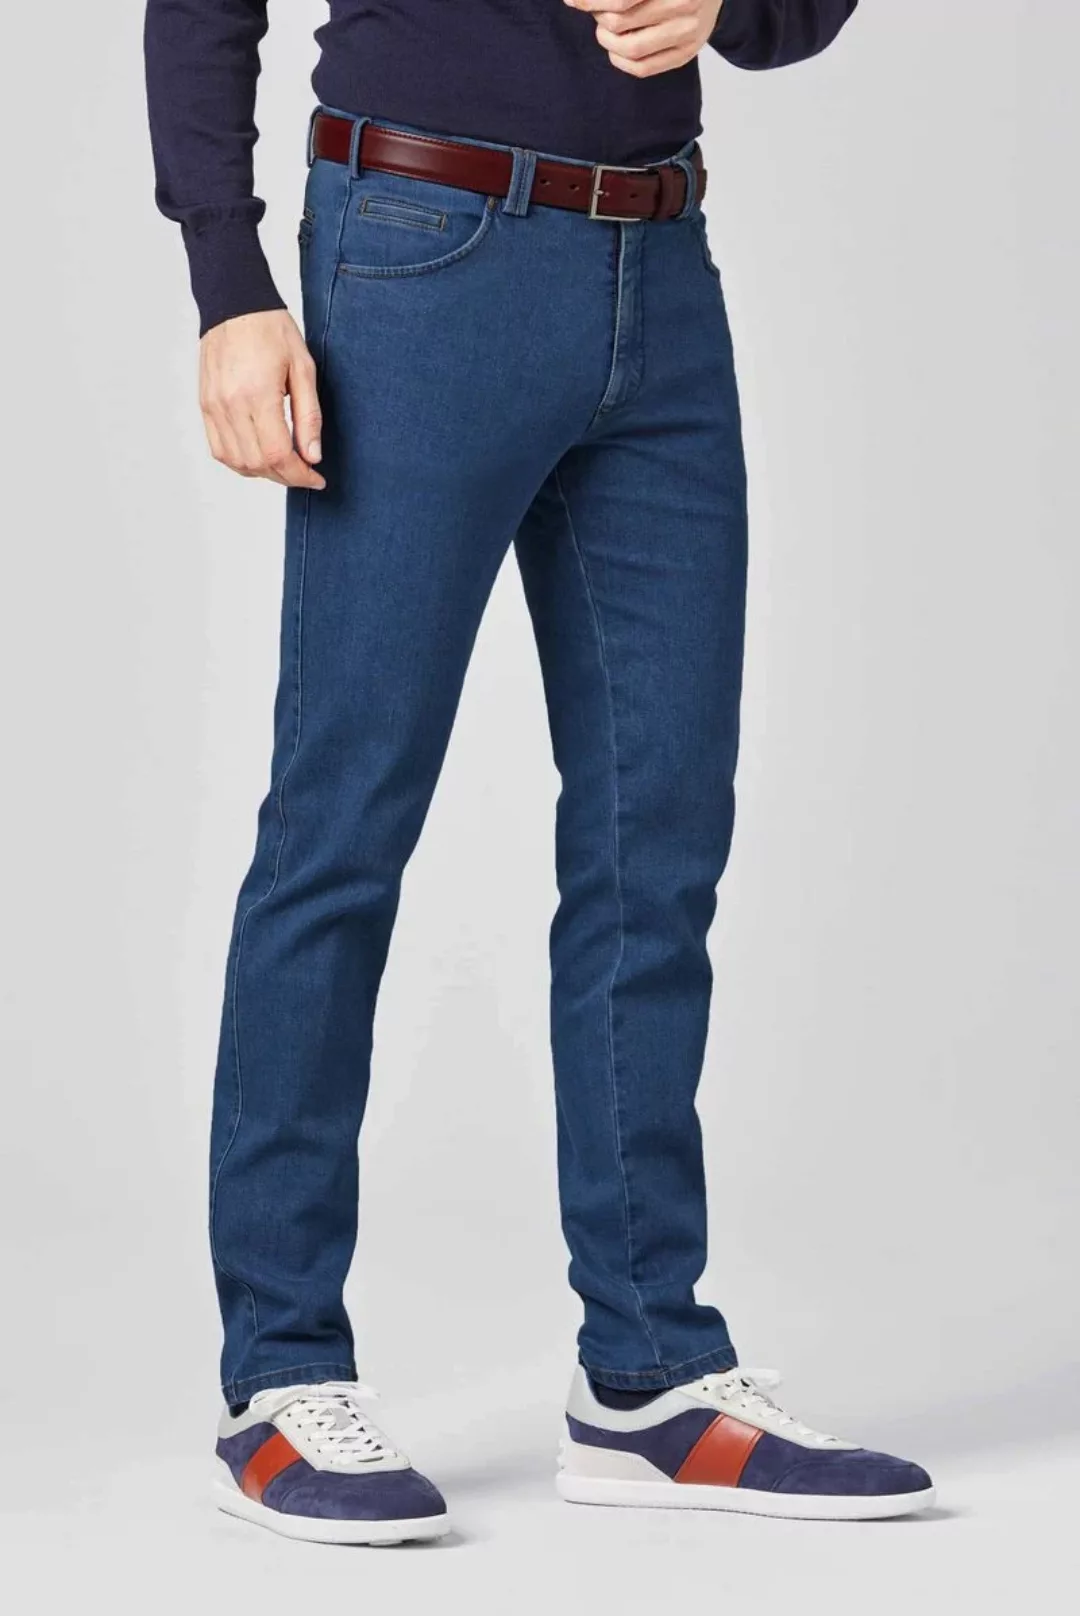 Meyer Jeans Dublin Blau - Größe 26 günstig online kaufen